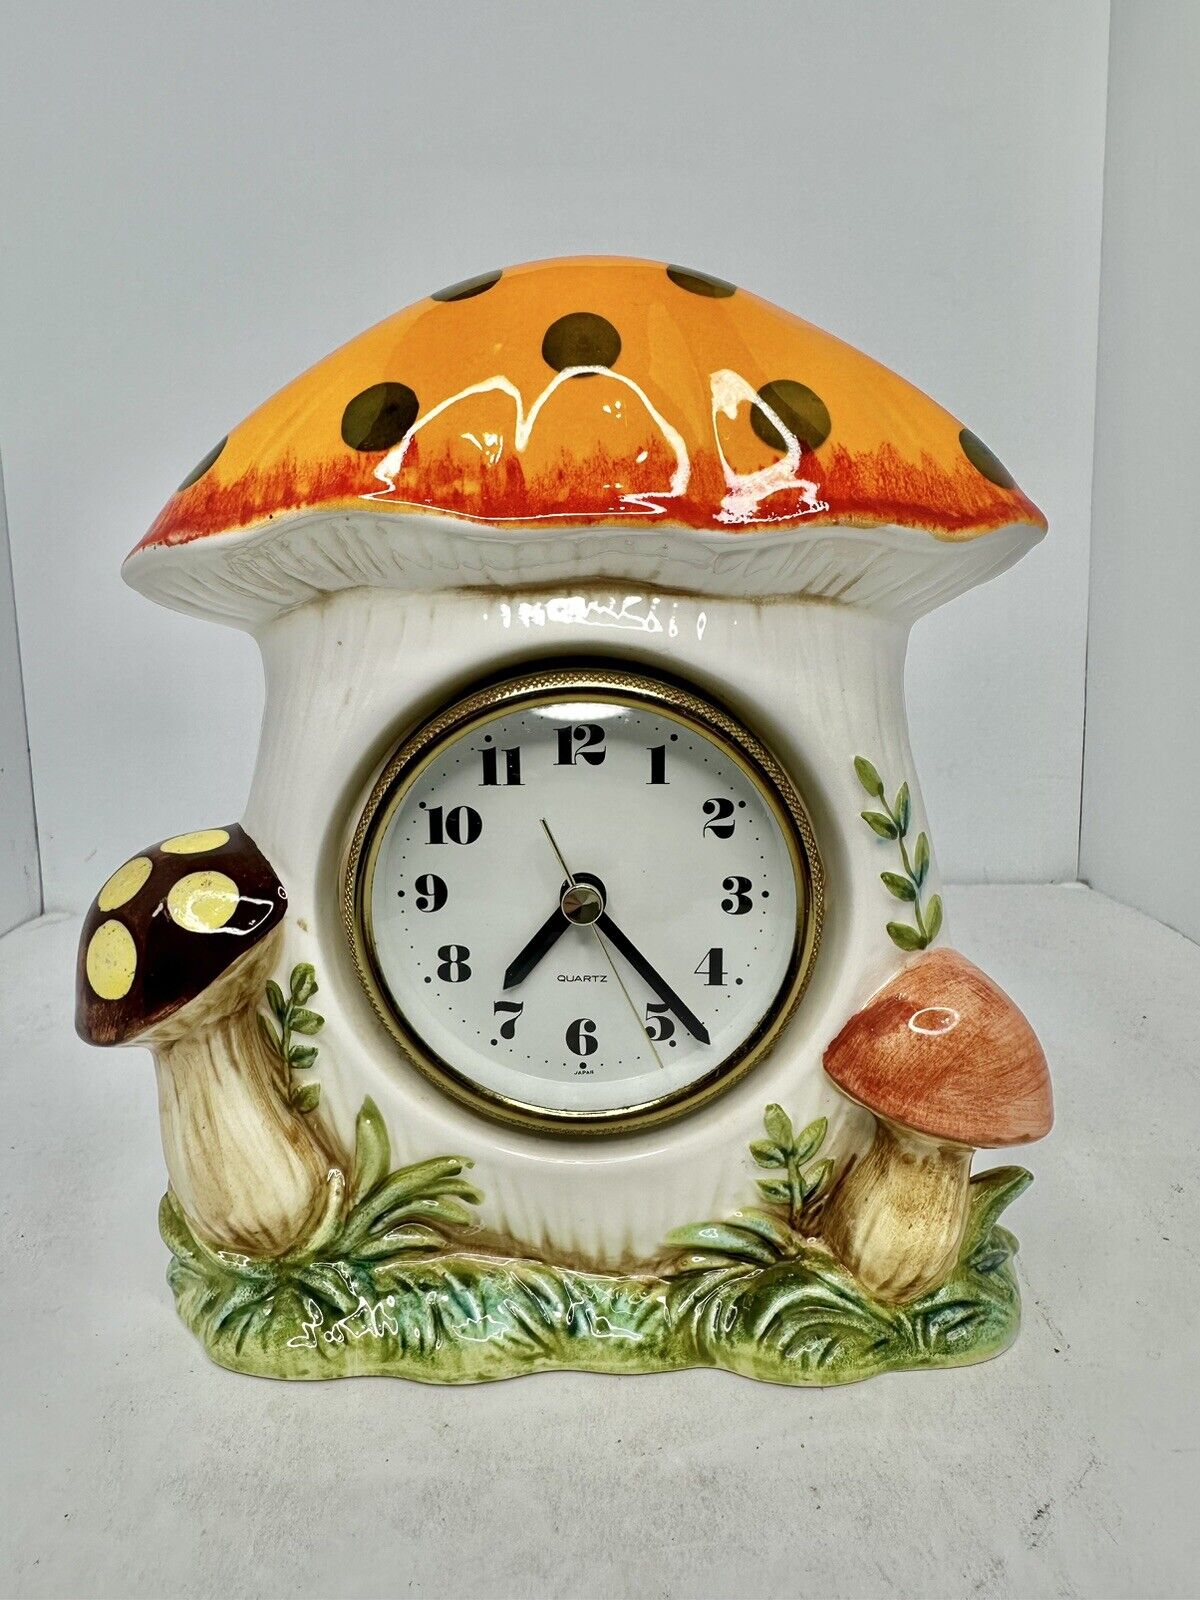 HTF Rare Vintage MCM Sears Merry Mushroom Ceramic Desk Wall Clock 1978 Works